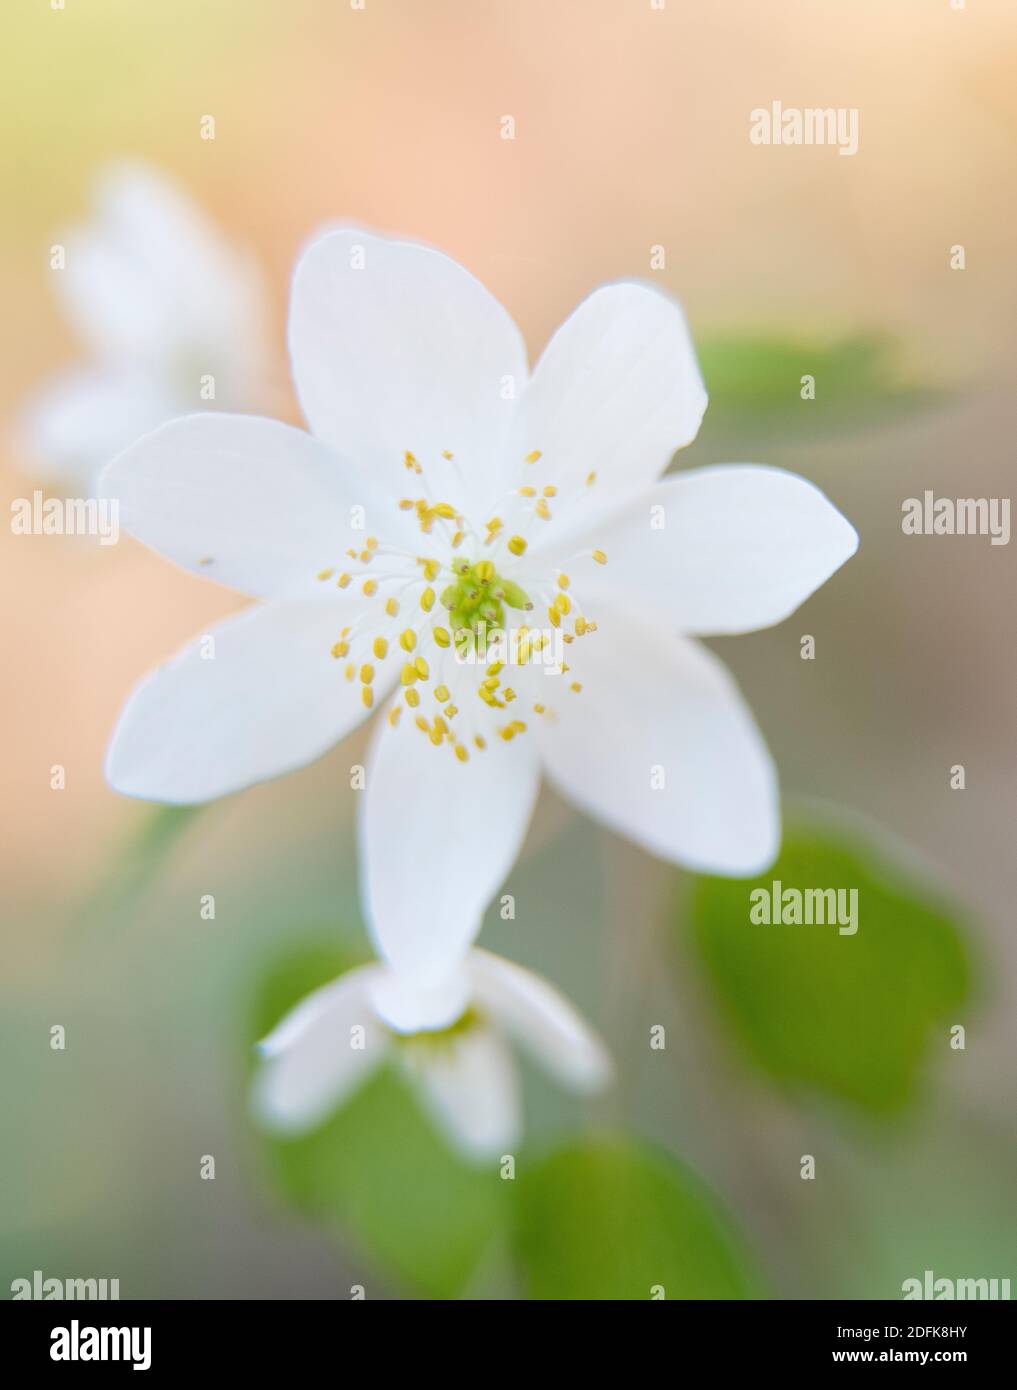 Rue-anemone in fiore sul pavimento della foresta. Foto Stock